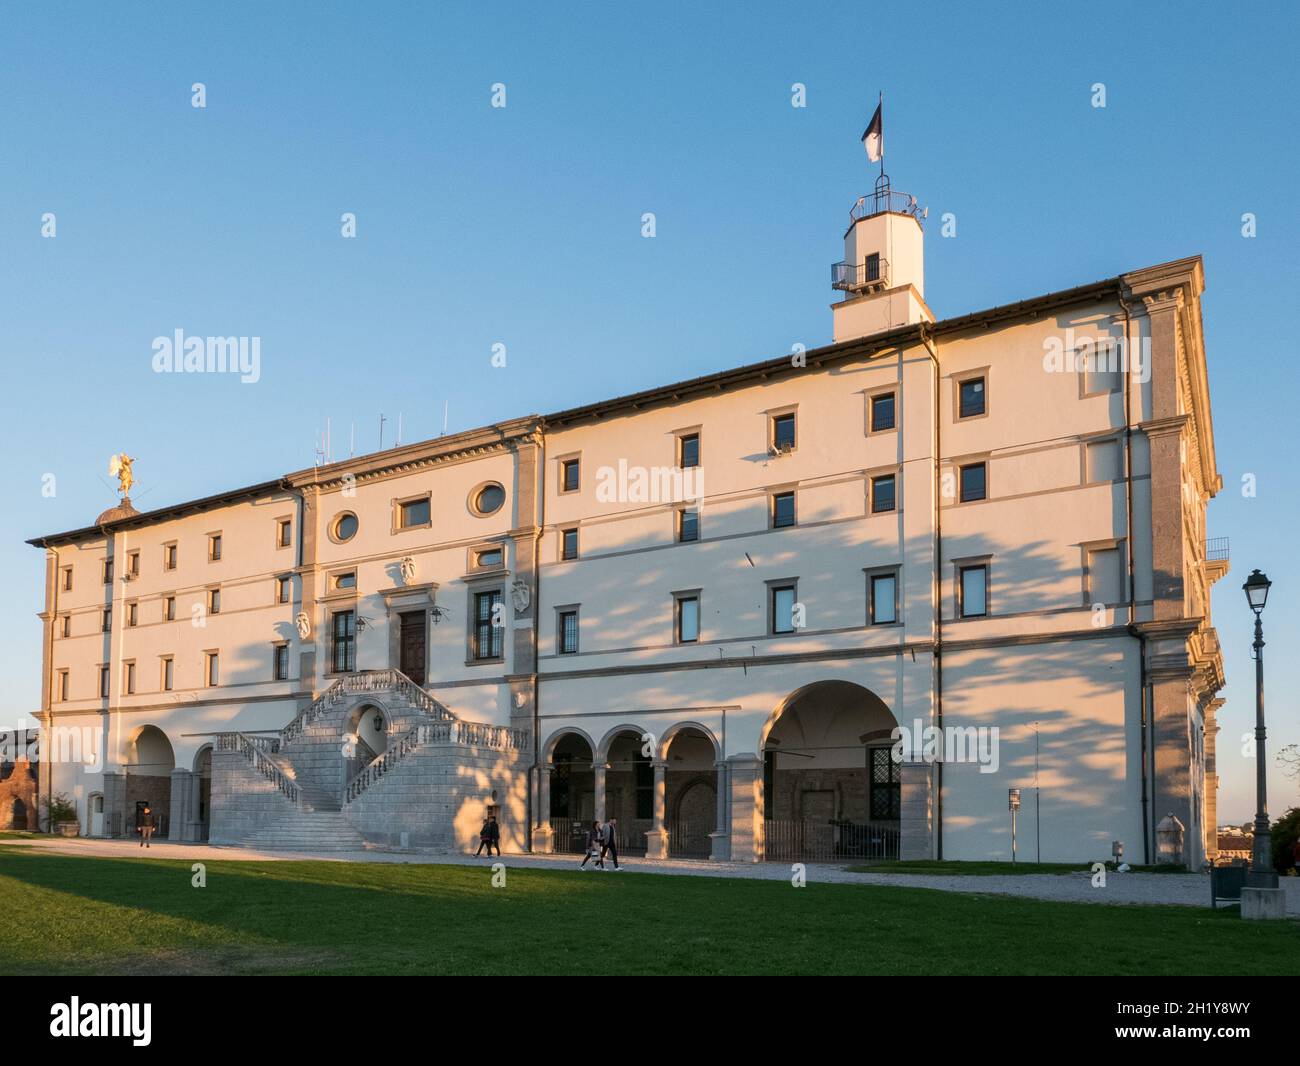 Udine, Italia - la facciata del Castello di Udine, un palazzo nobile costruito nel XVI secolo nel seminterrato del distrutto castello medievale Foto Stock